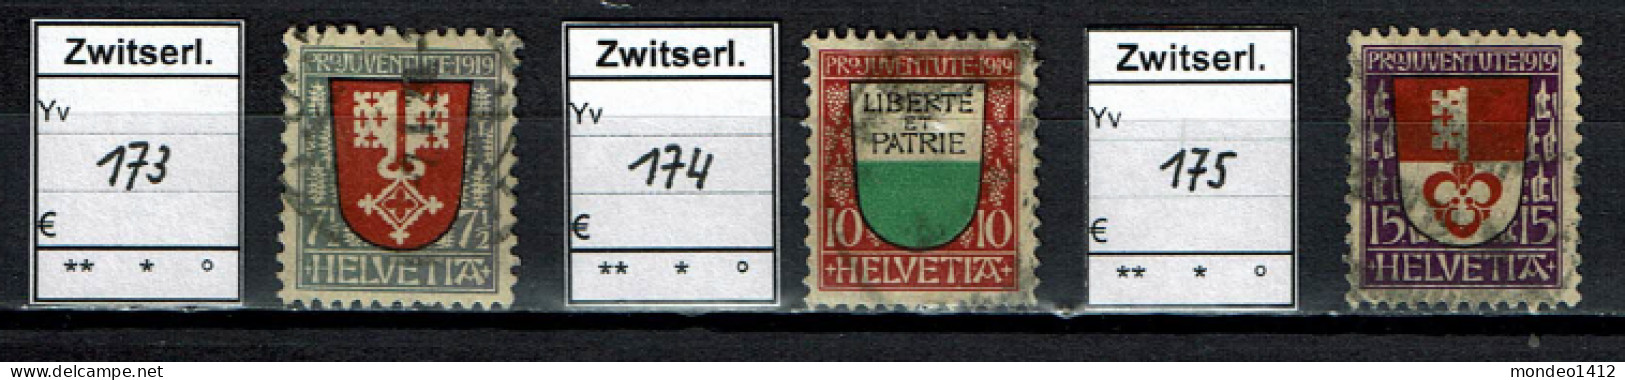 Suisse 1919 - YT 173/175 - Oblit. Used - Gebruikt